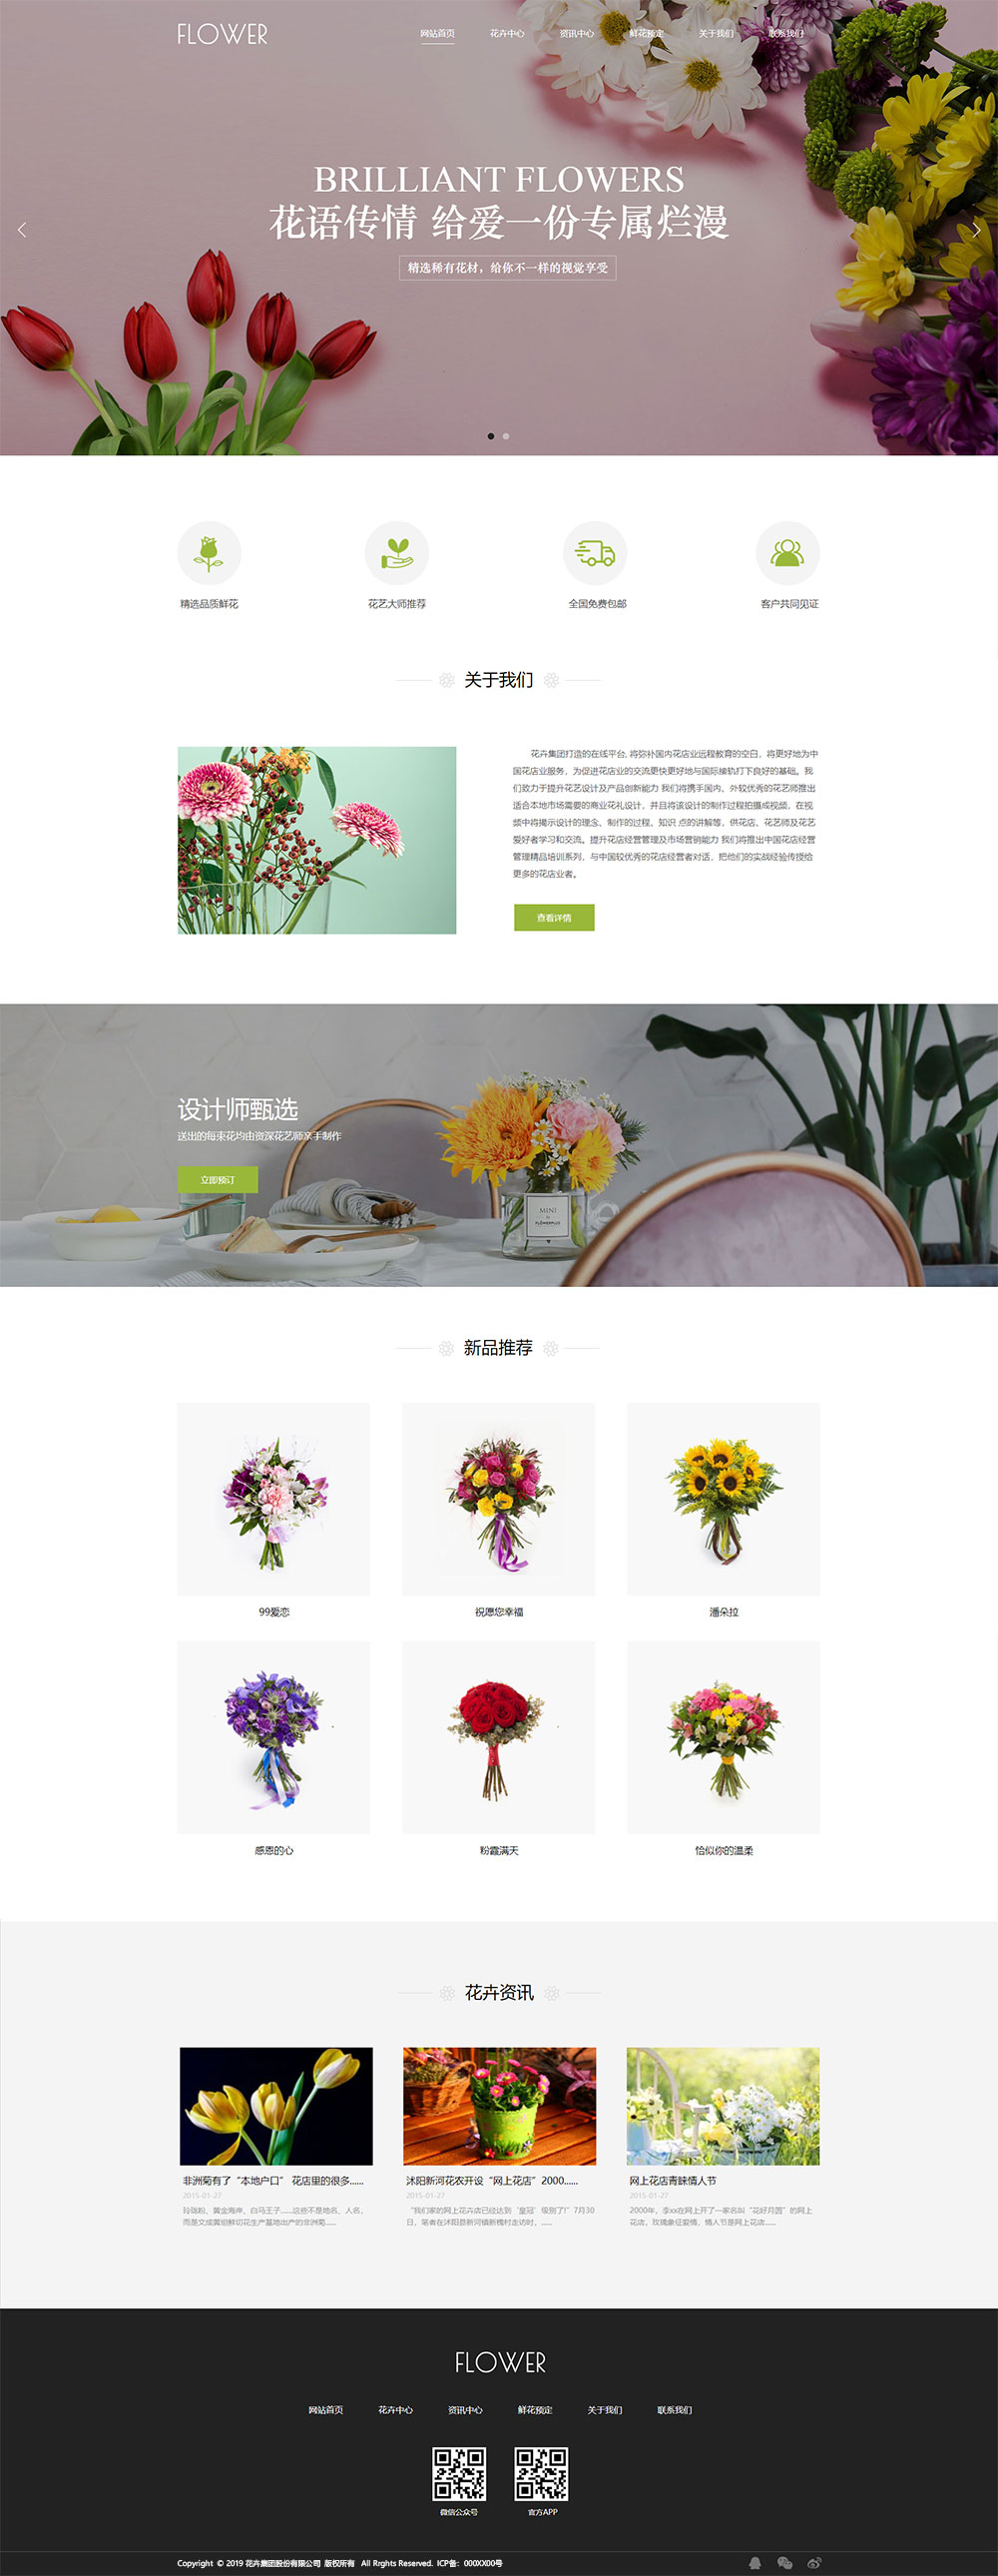 企业网站精美模板-flowers-268